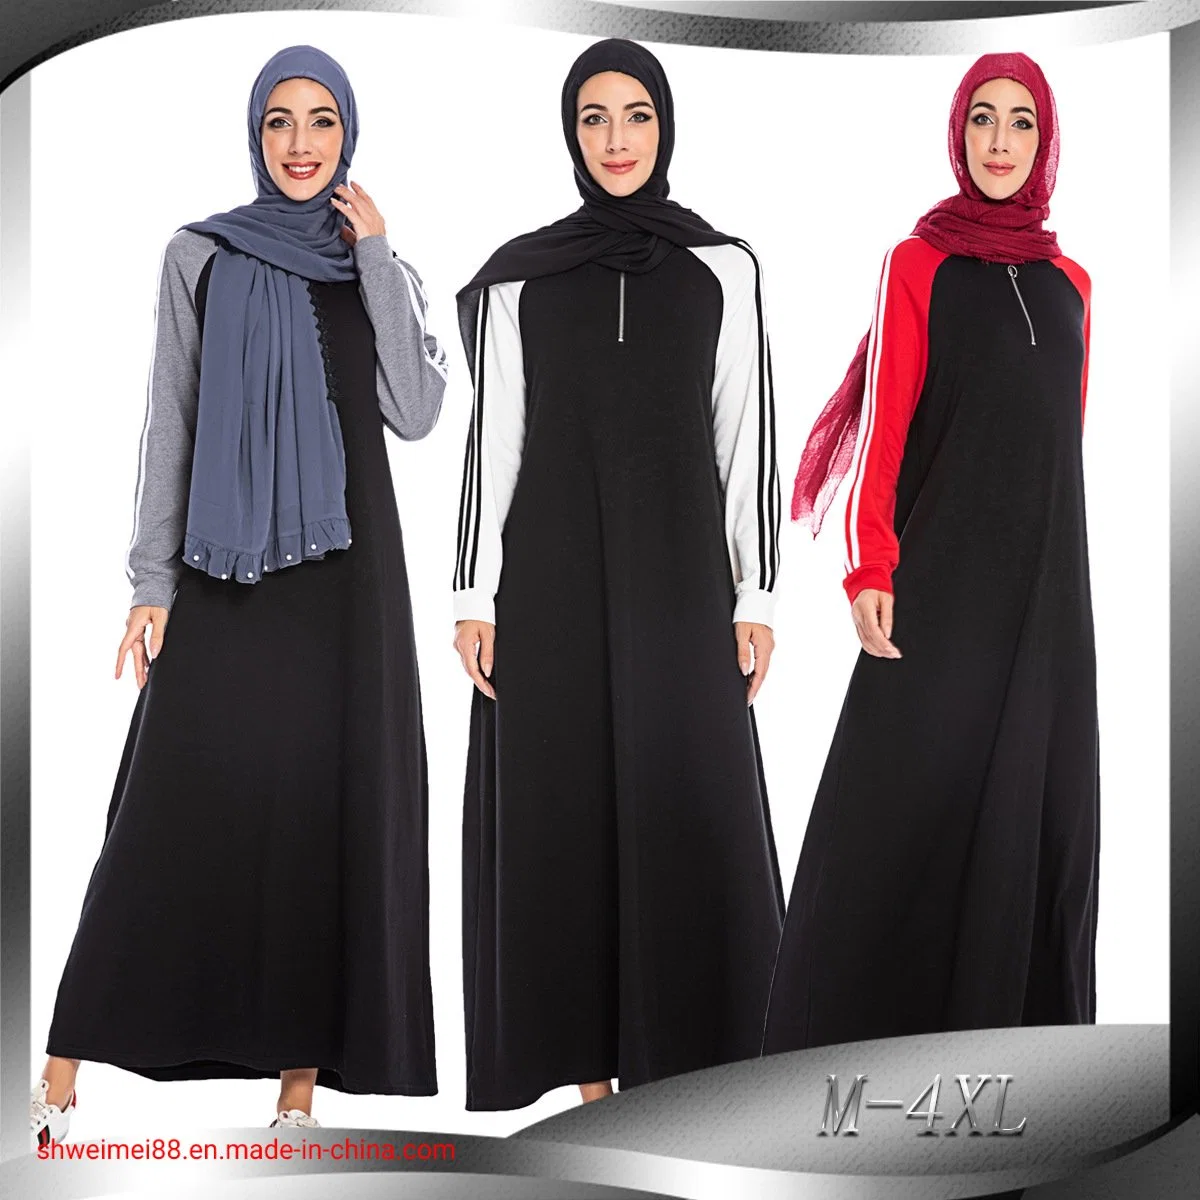 Fabricante de roupas de inverno para mulheres muçulmanas turcas com hijab islâmico.